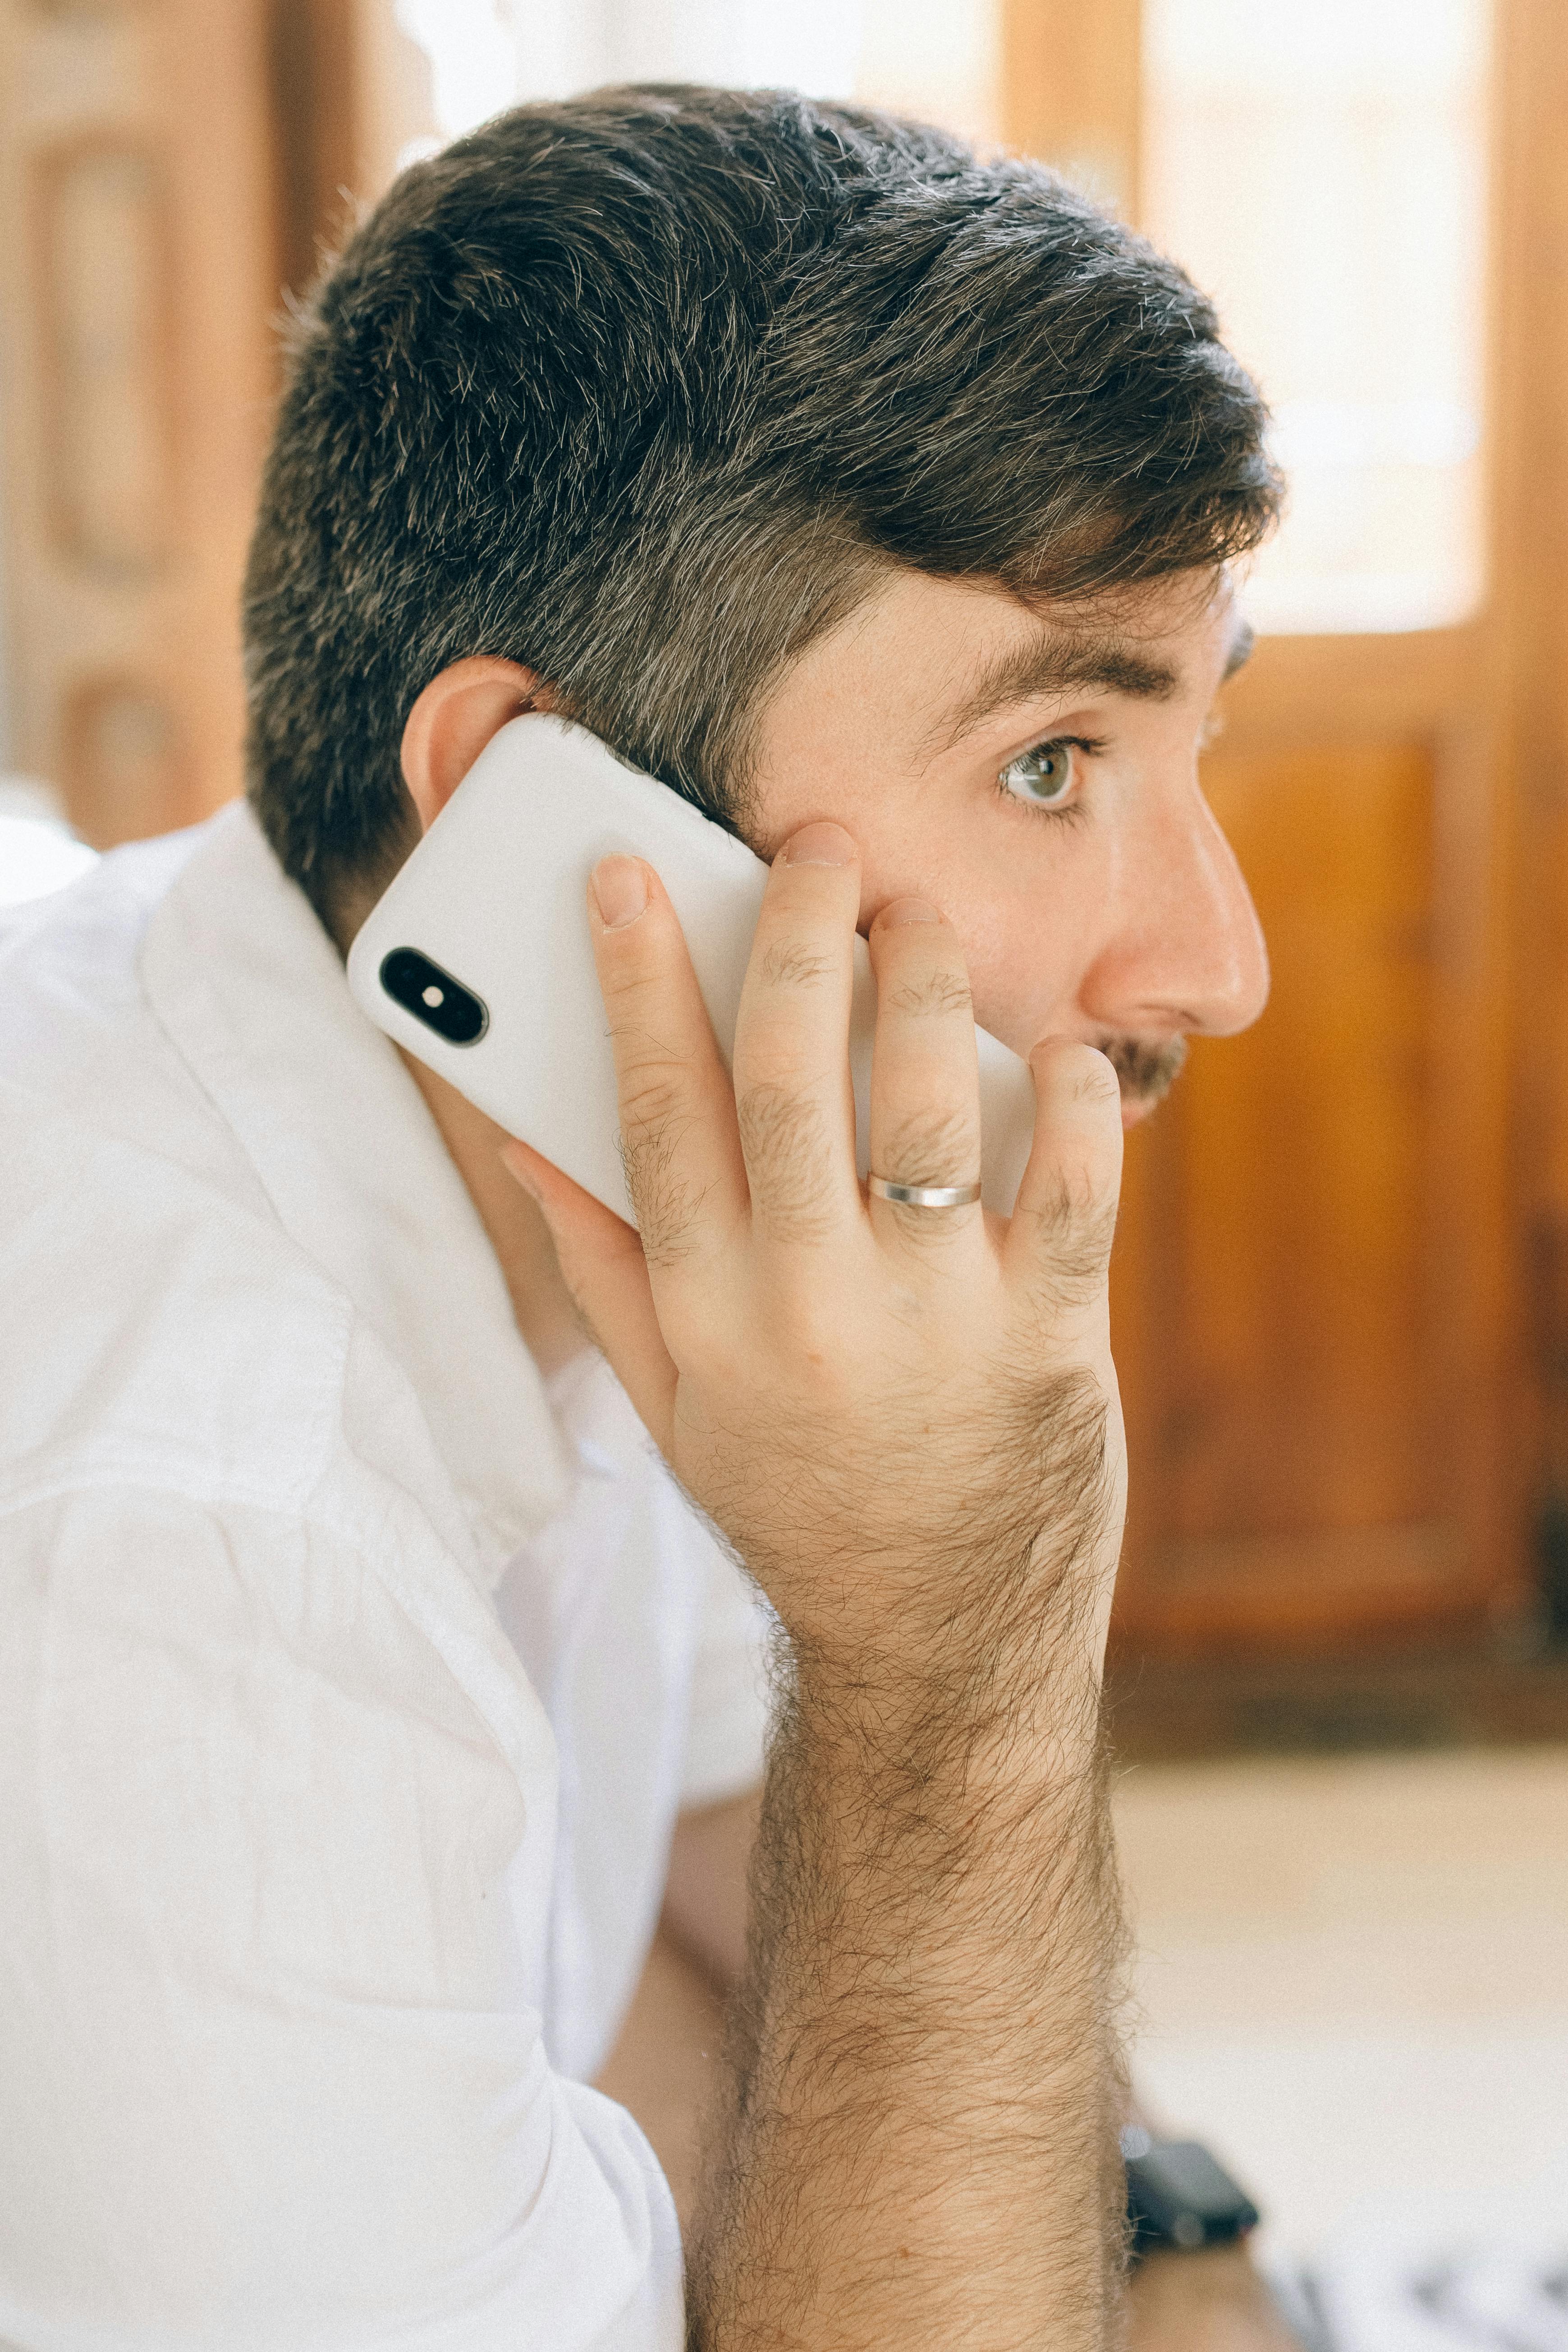 Un hombre hablando por teléfono | Fuente: Pexels